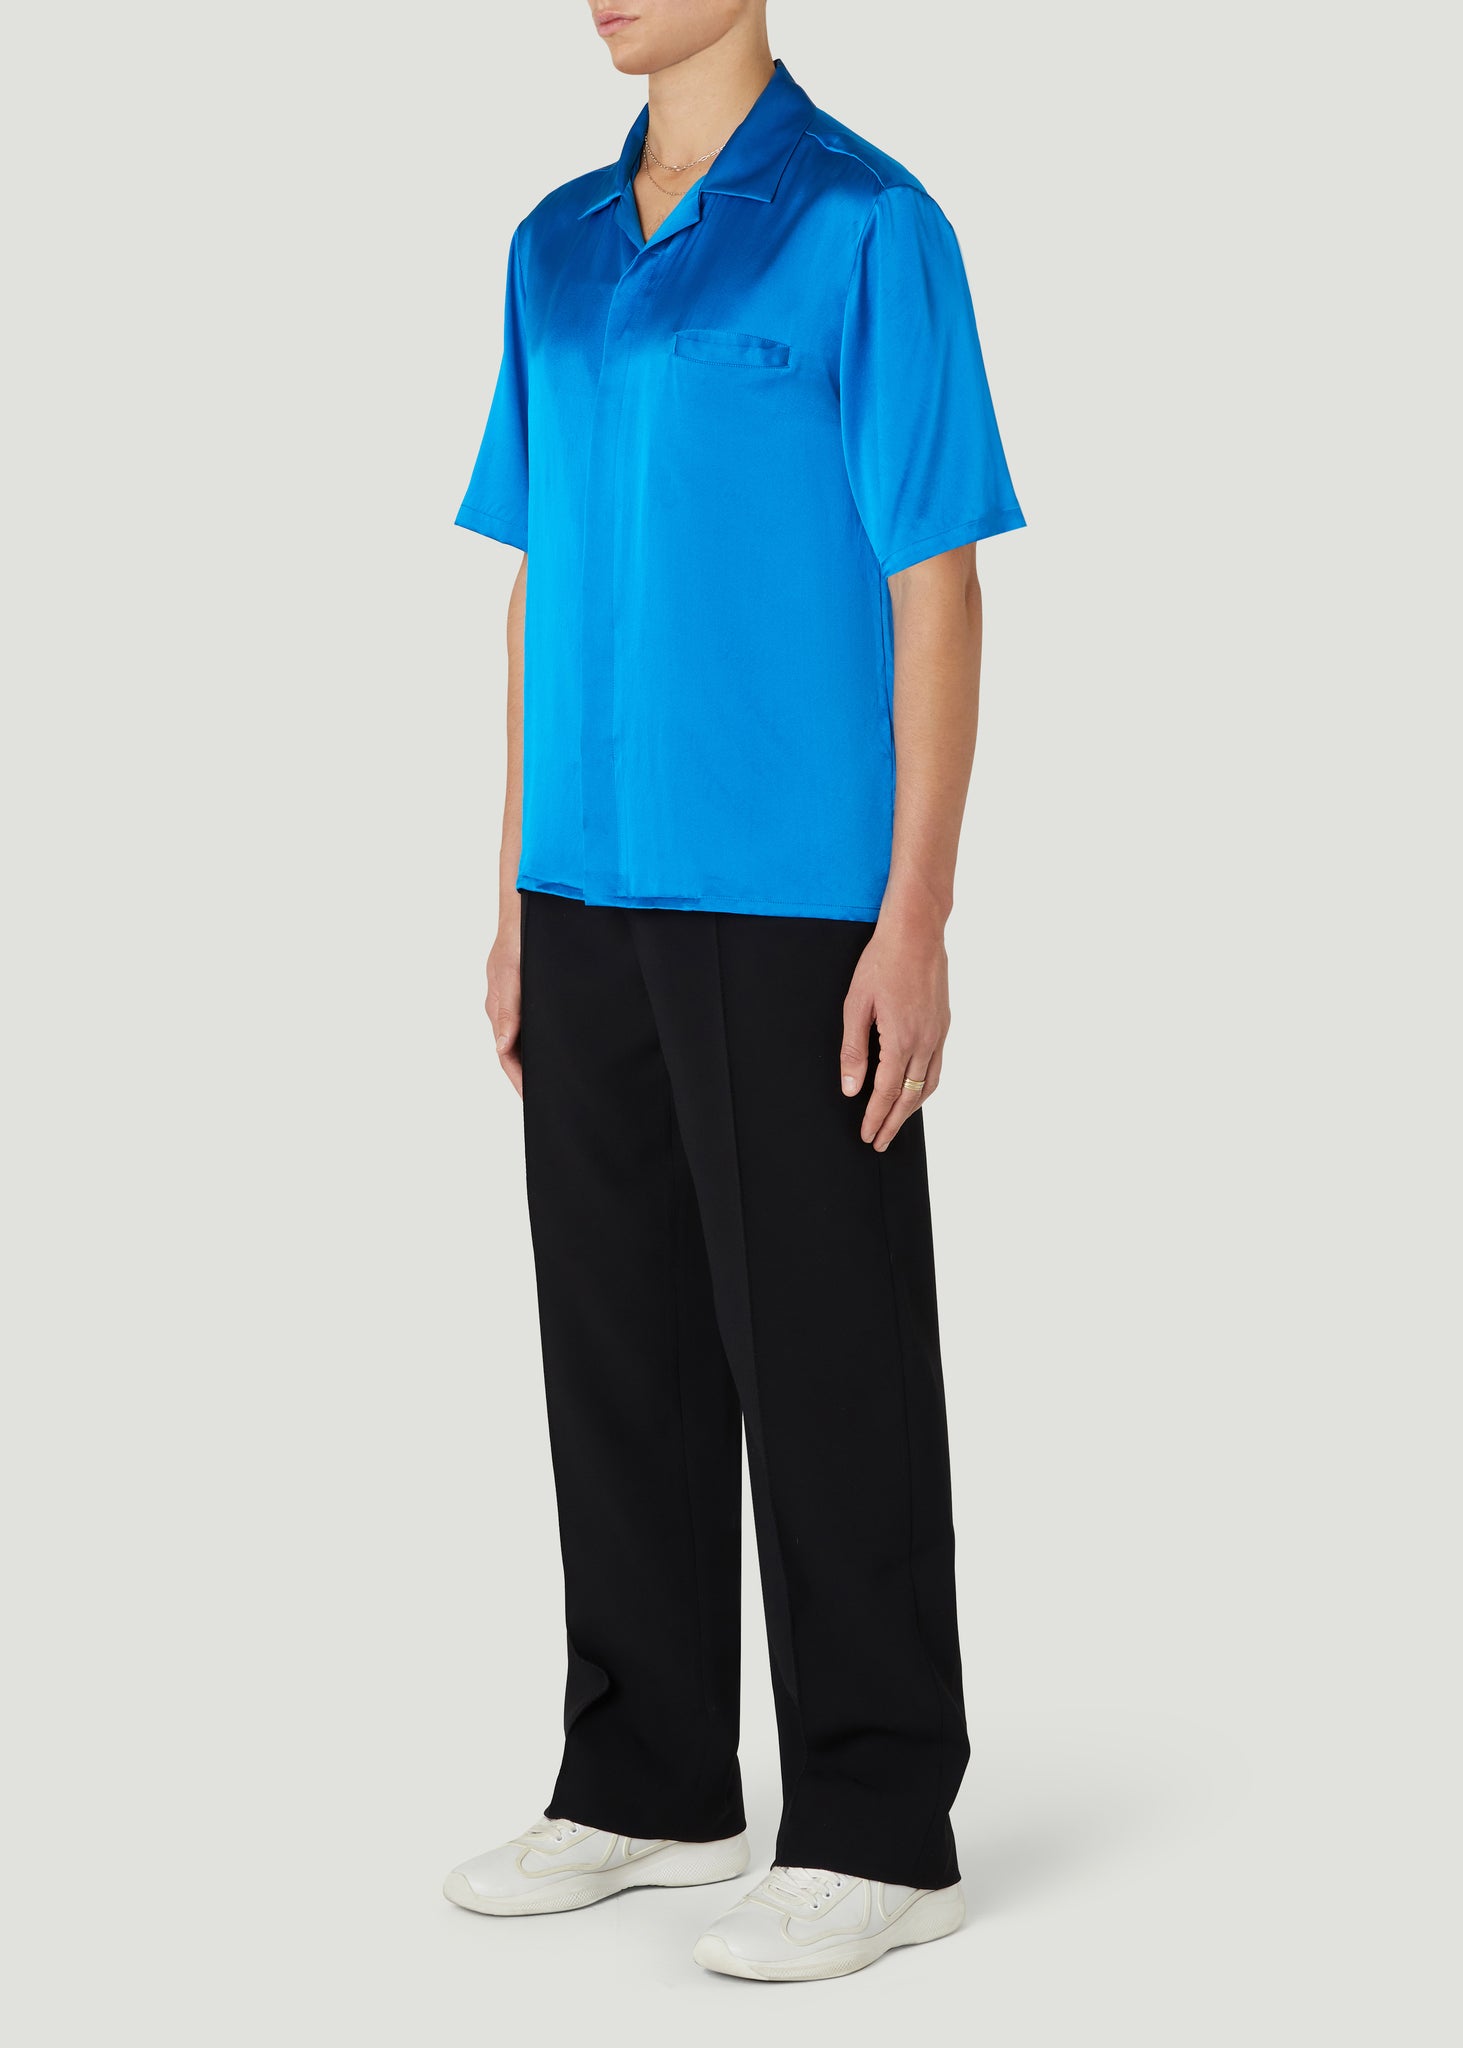 Core Short Sleeve Shirt Blue